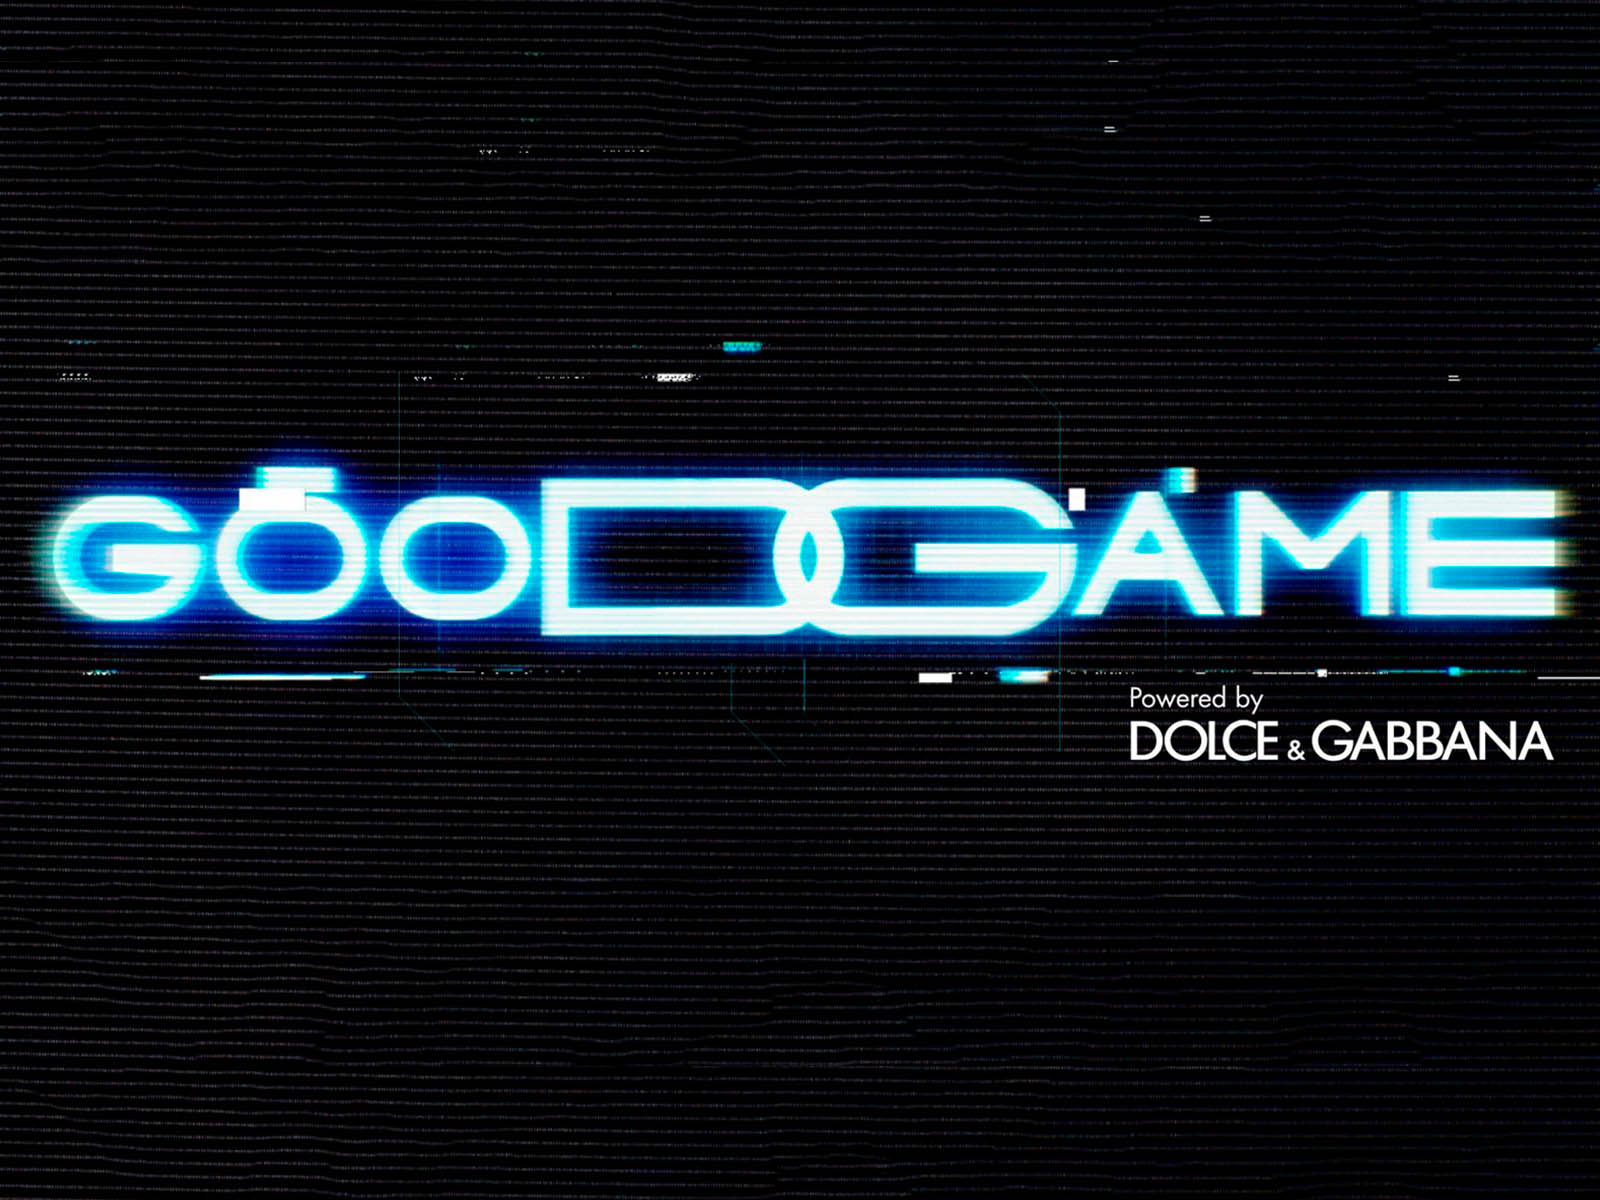 Dolce&Gabbana debuta en el mundo de los videojuegos